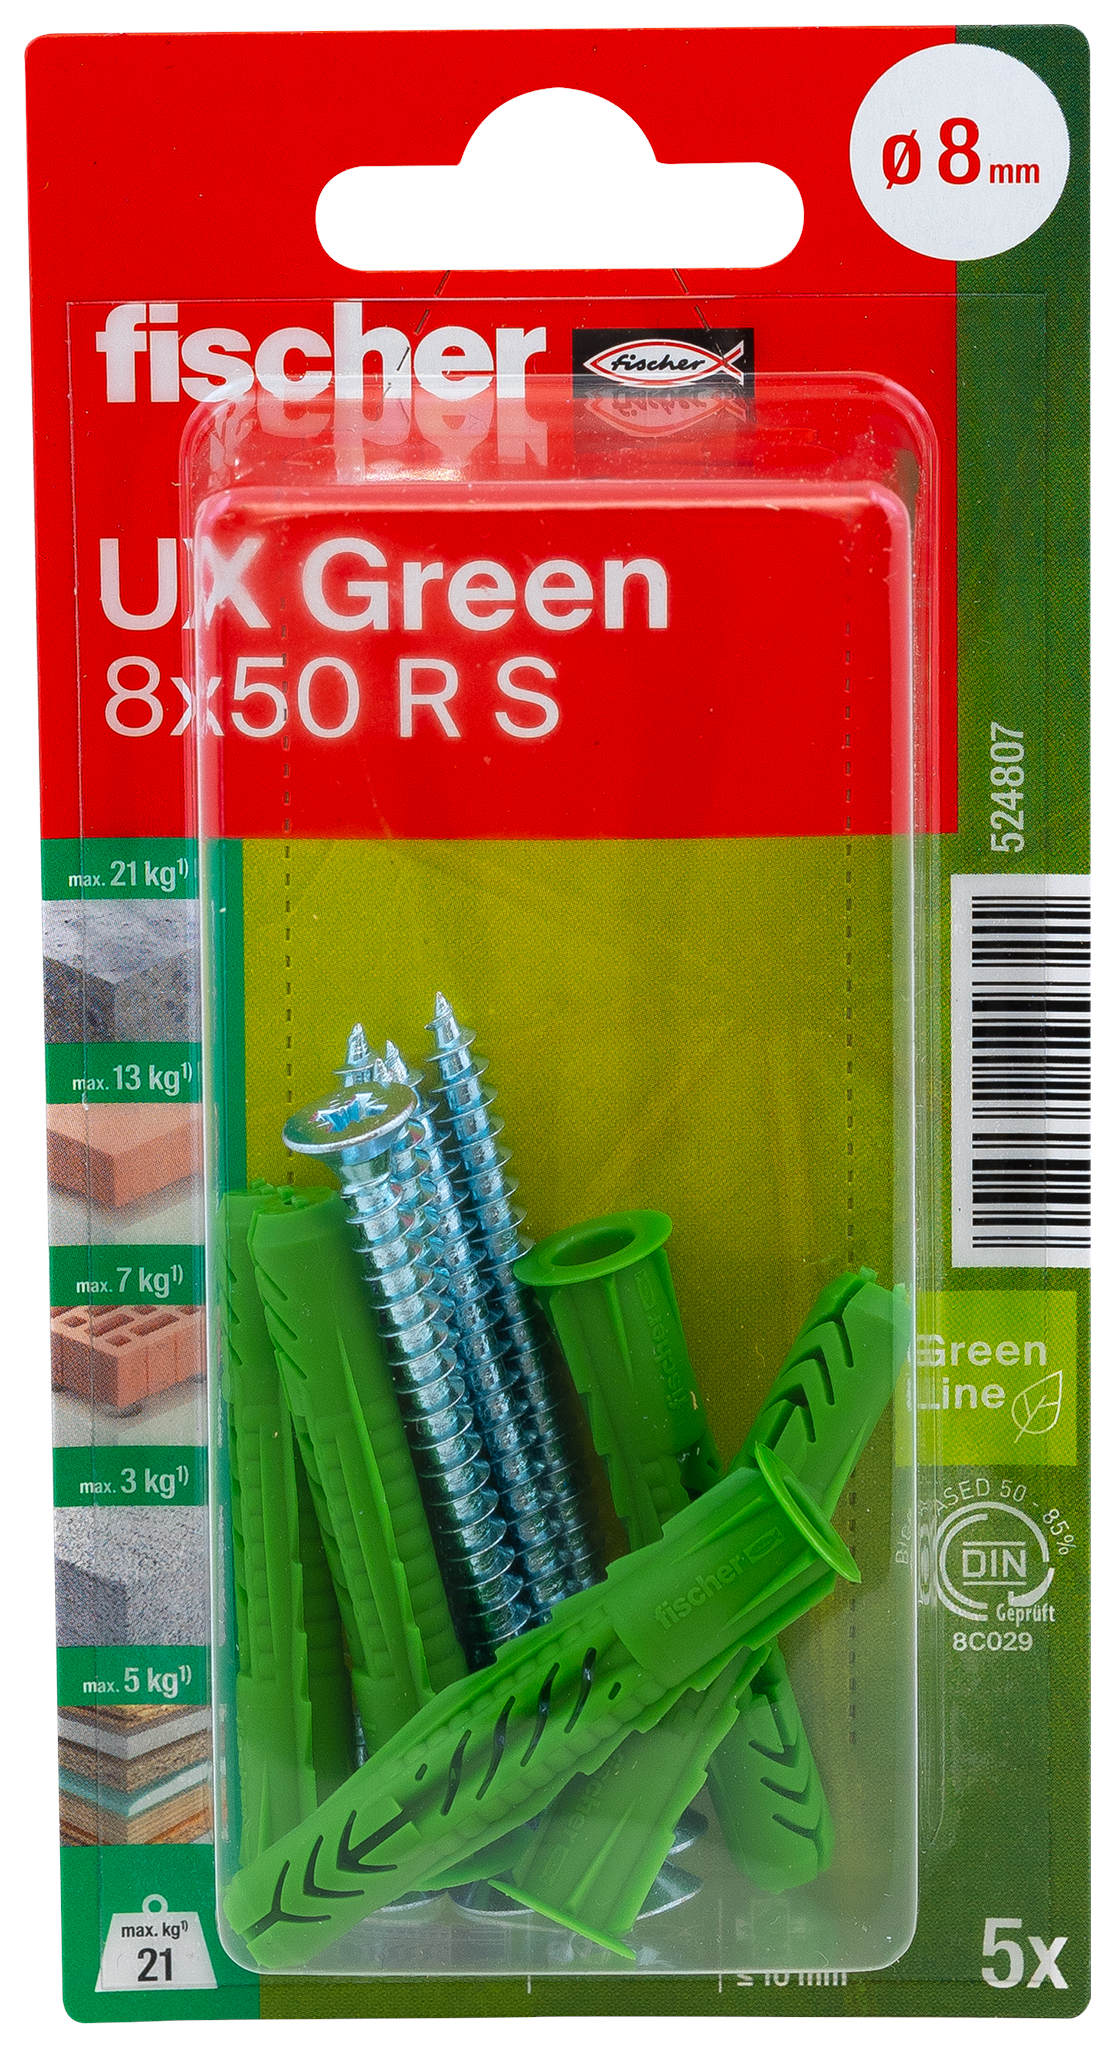 fischer Universaldübel UX Green 8 x 50 R S mit Rand und Schraube